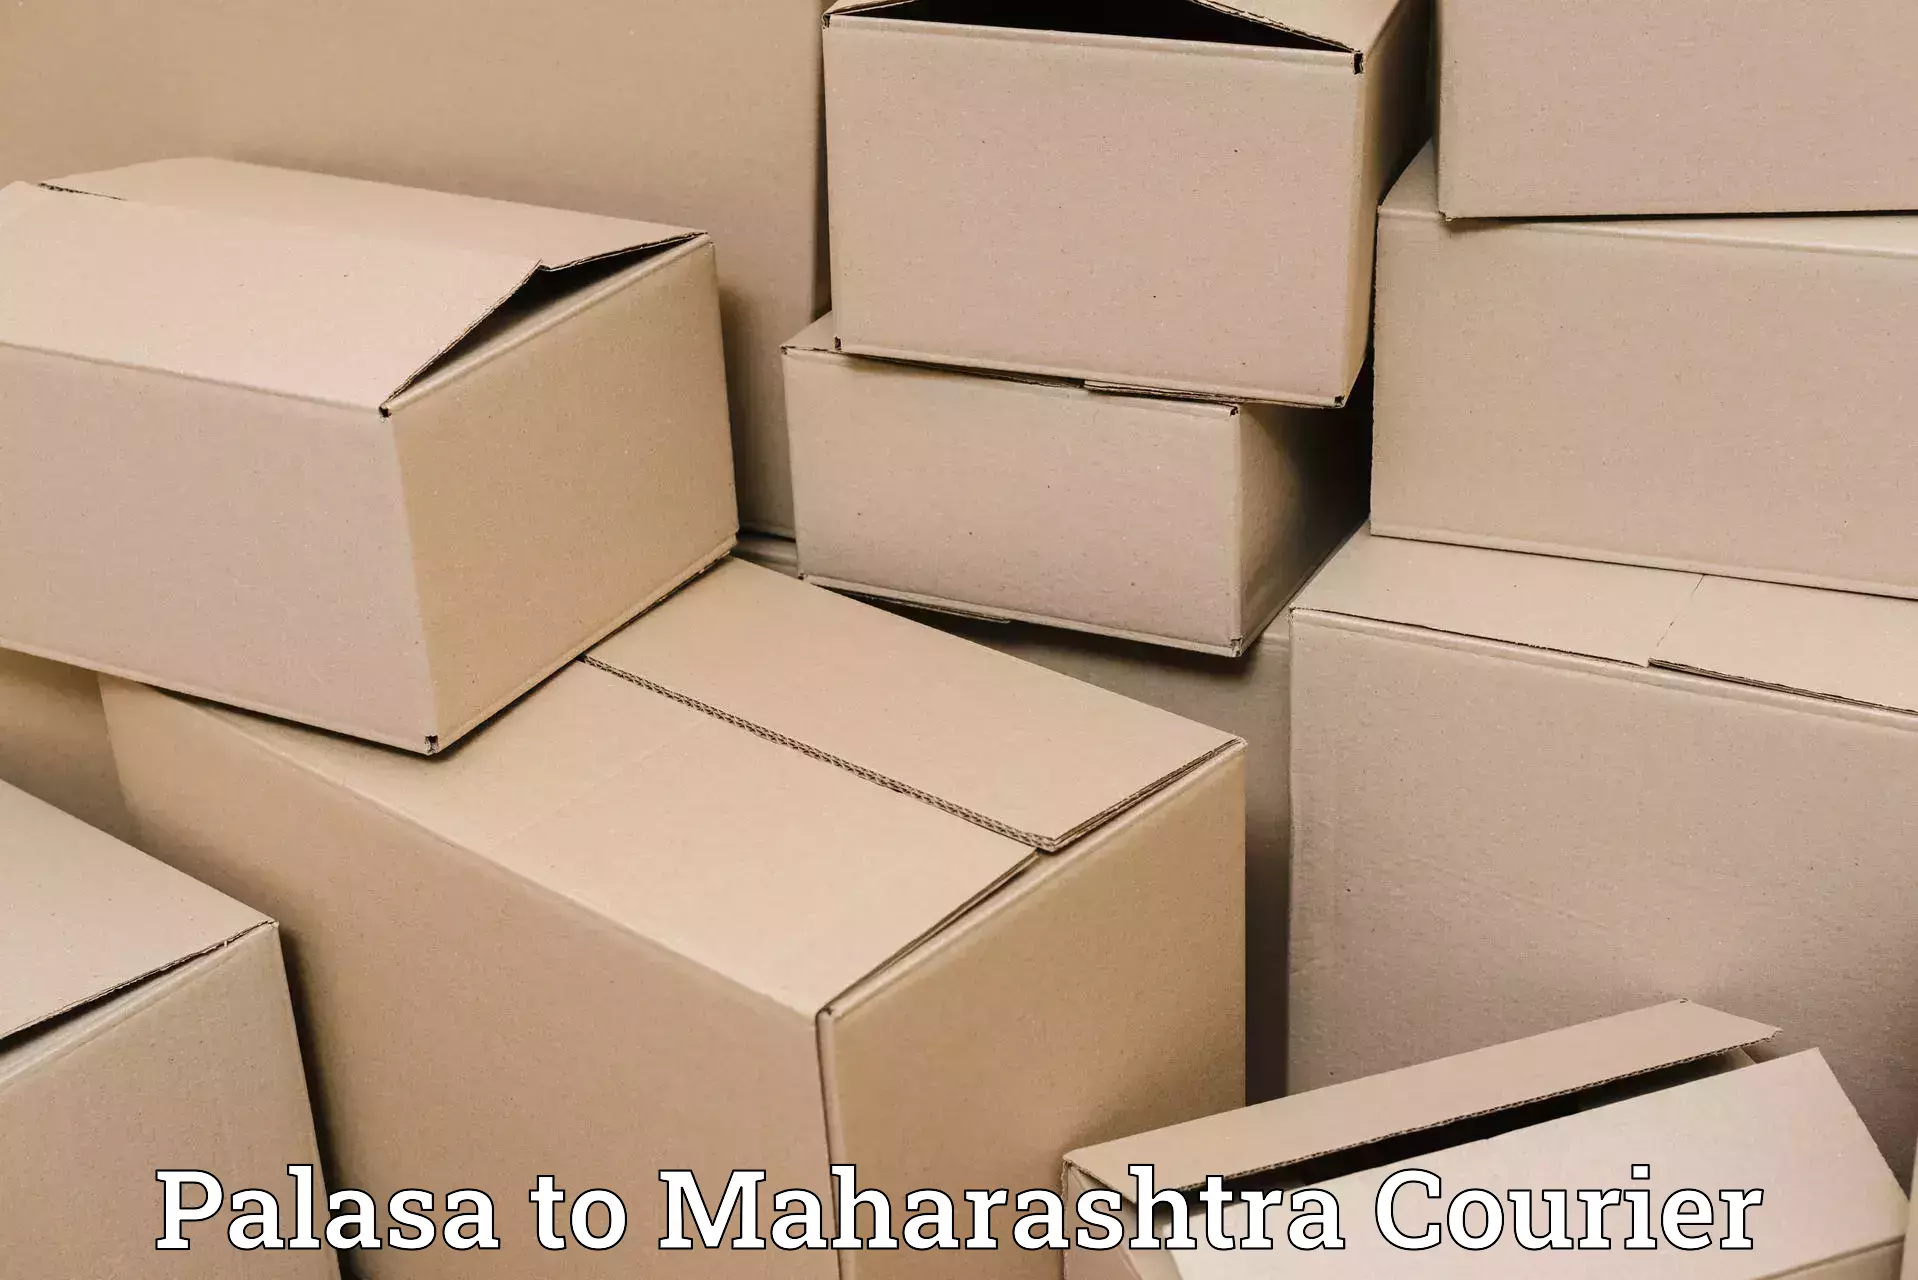 Ground shipping Palasa to Maharashtra